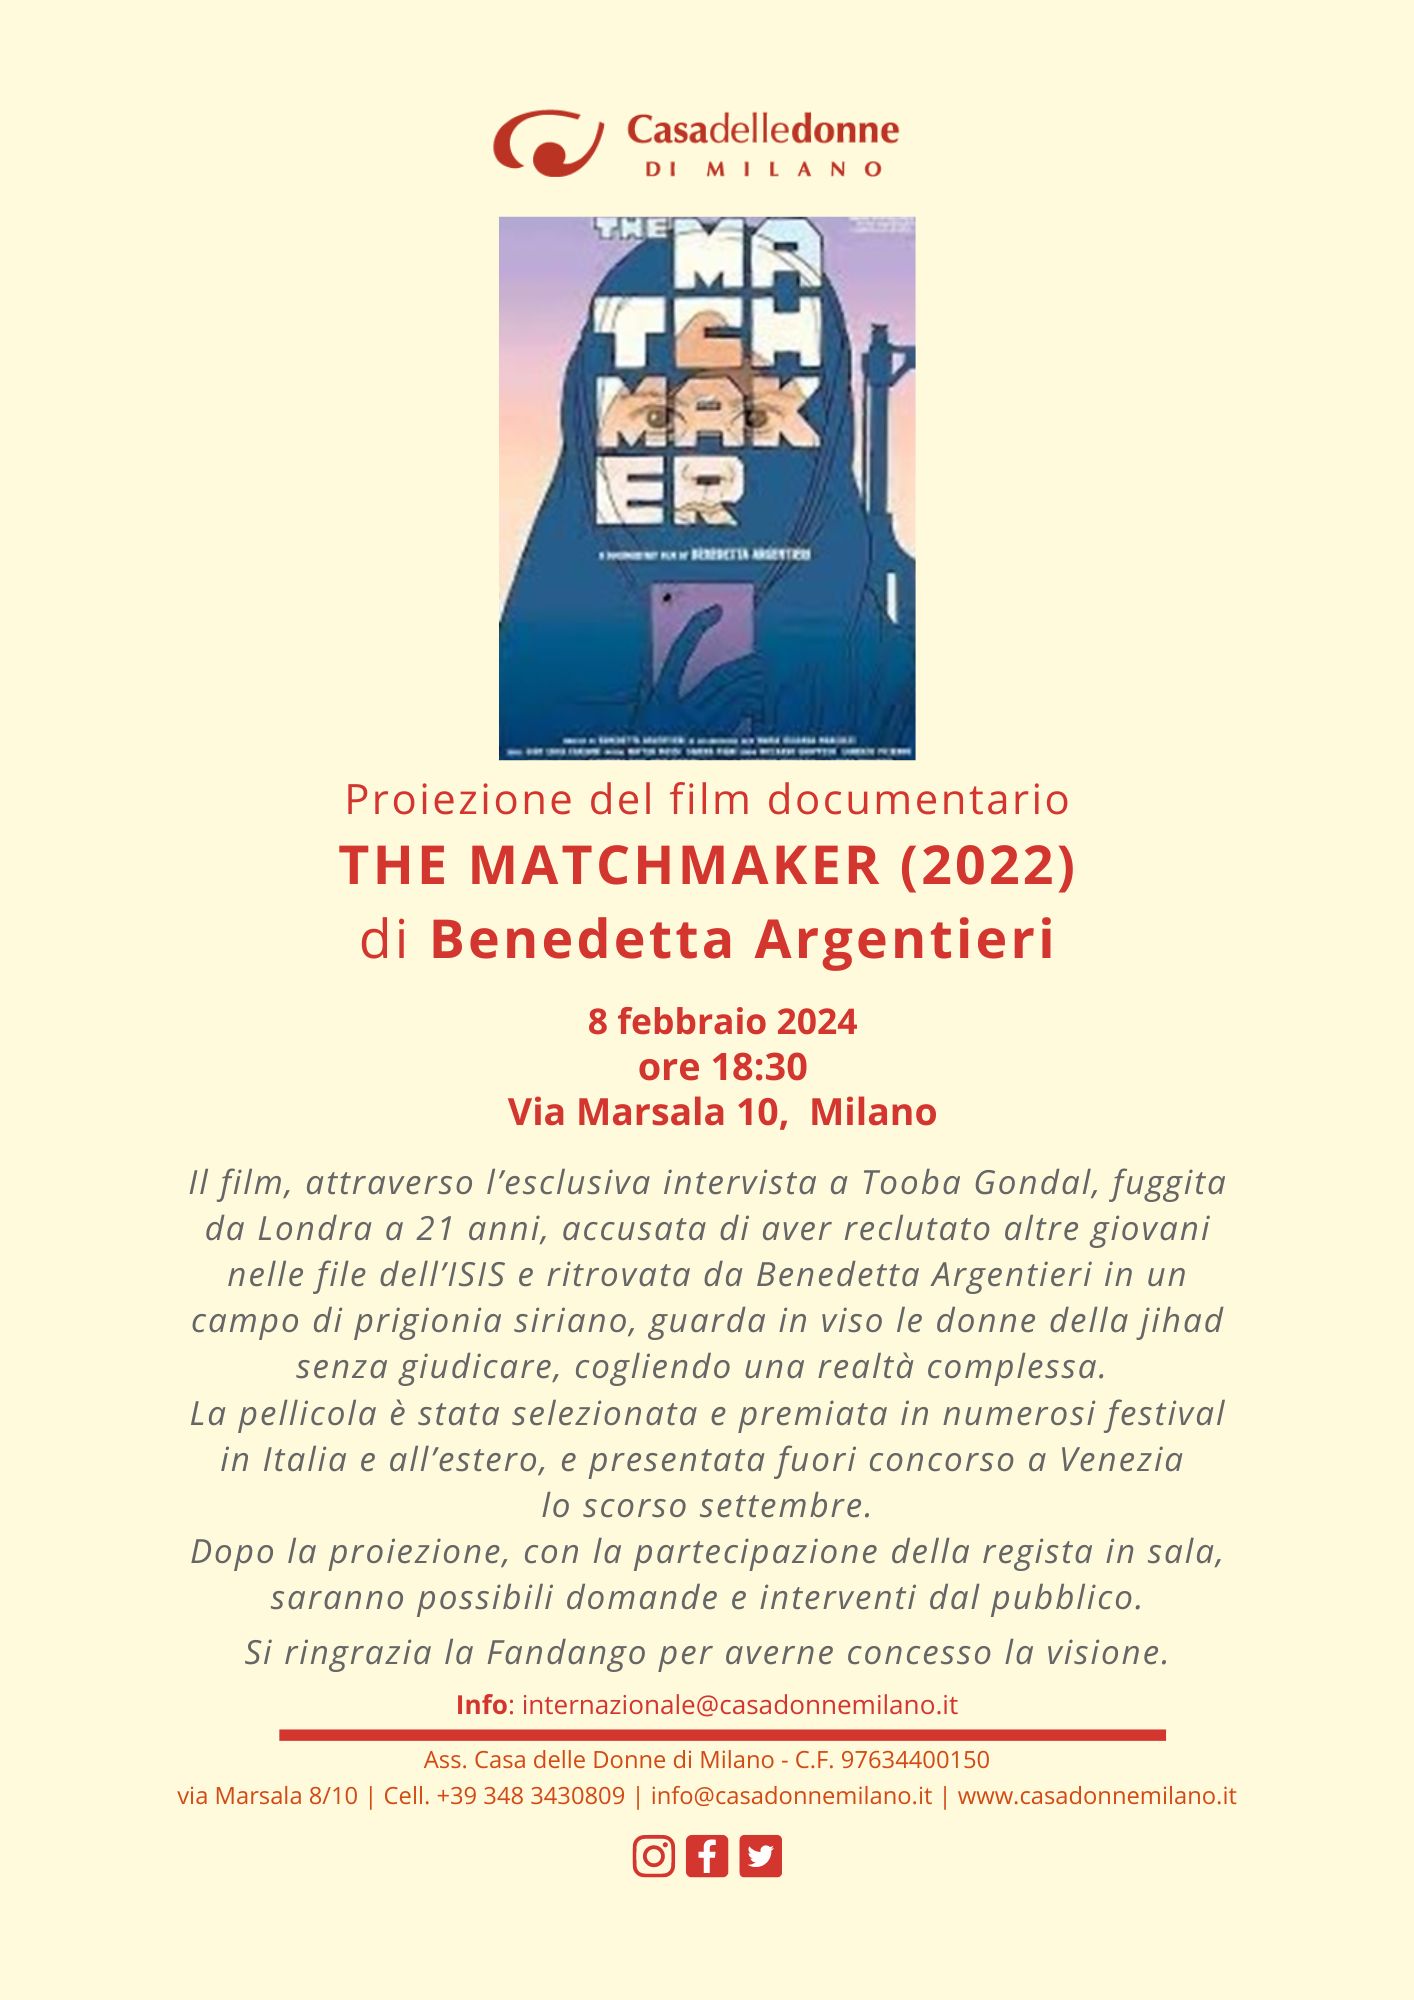 Proiezione del film "The Matchmaker" di Benedetta Argentieri @ Casa delle Donne di Milano